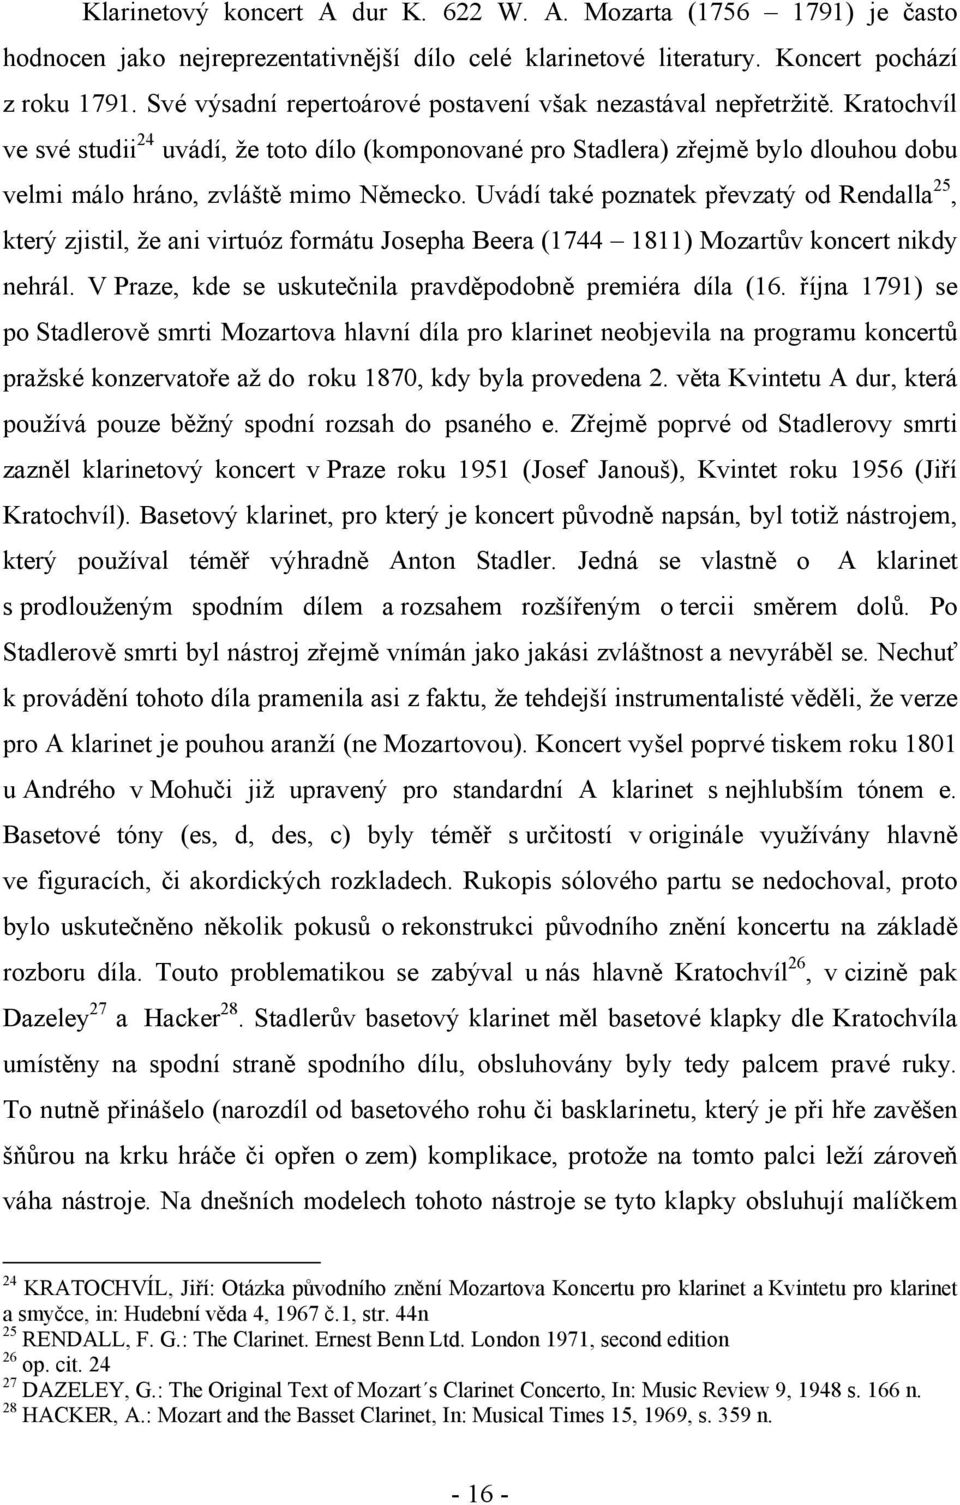 MASARYKOVA UNIVERZITA V BRNĚ. Vývoj klarinetového koncertu v 2. polovině  18. století a v 1. polovině 19. století (J. V. Stamic a C. M. v. - PDF Free  Download